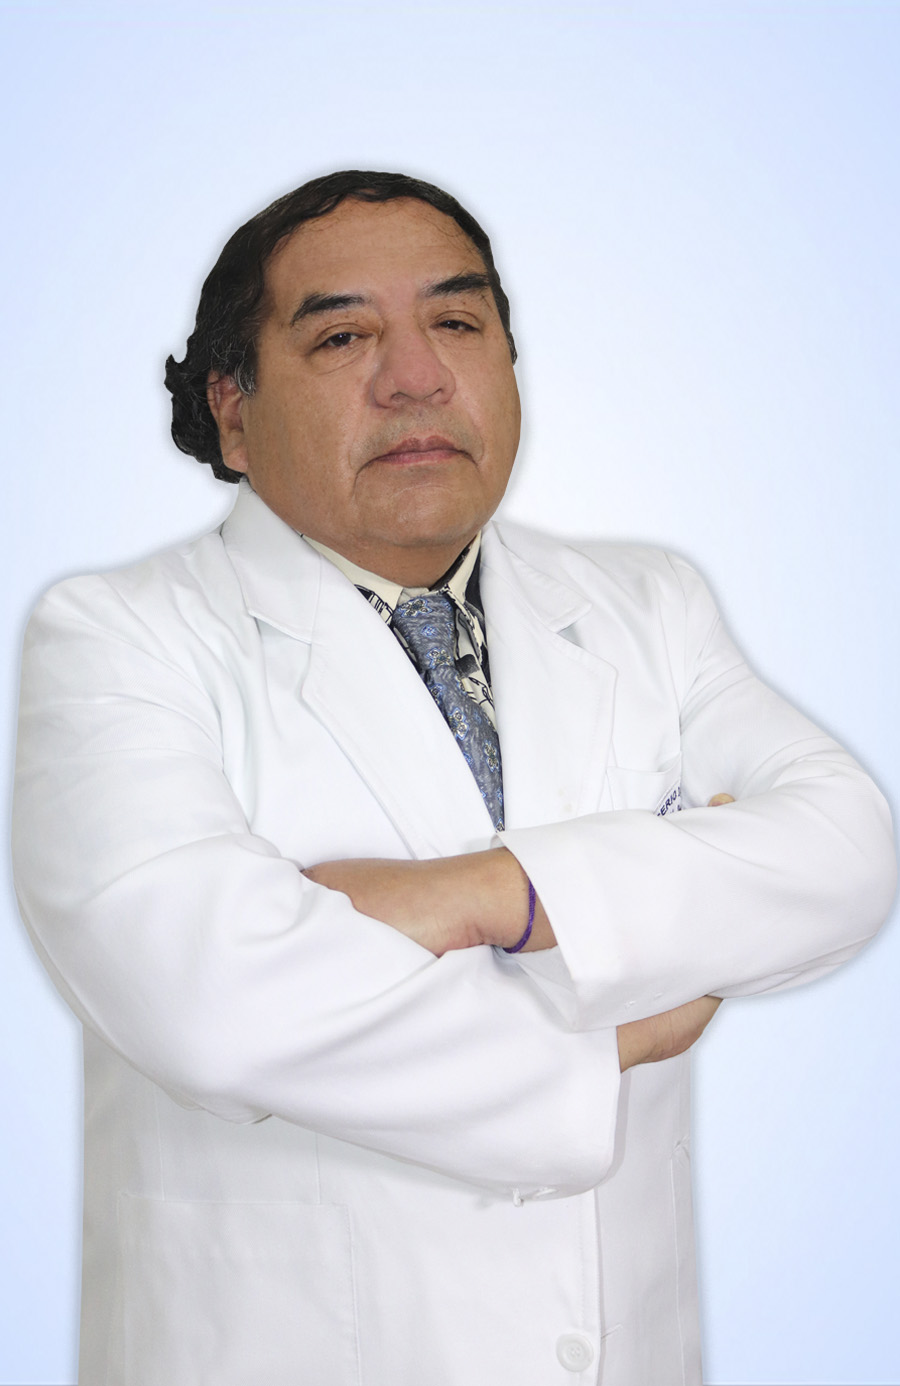 DR. QUIÑE